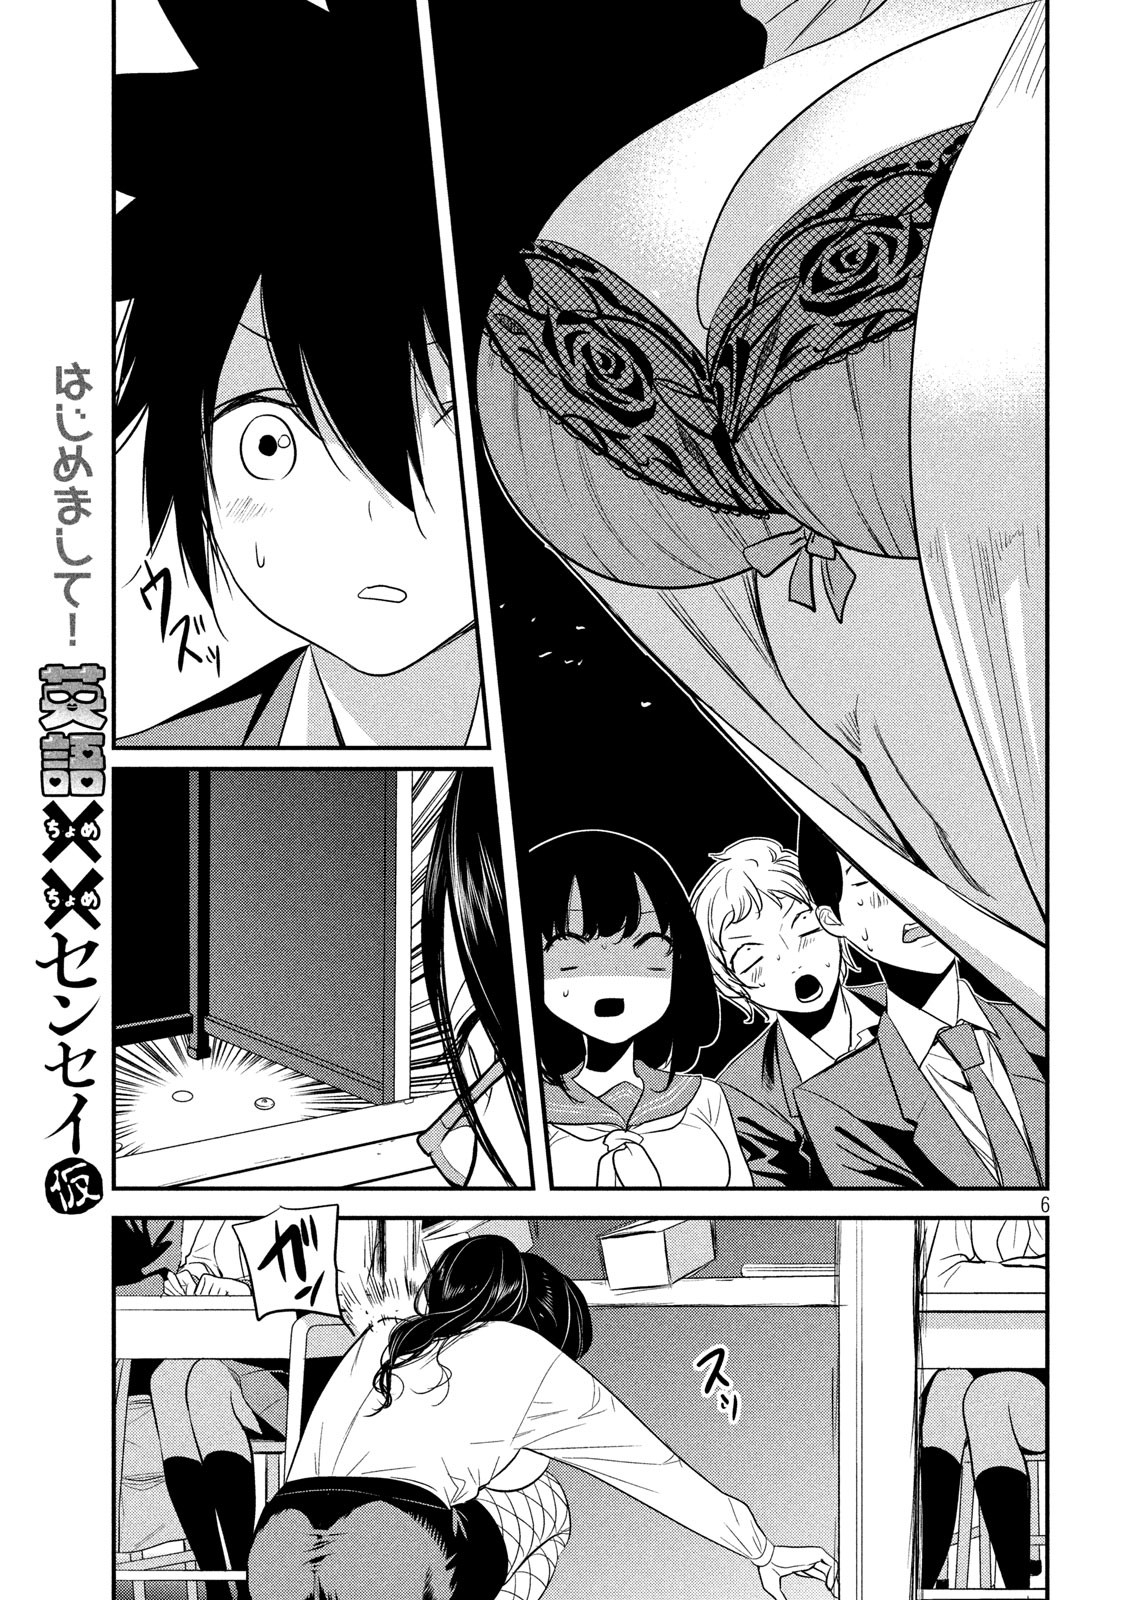 Eigo ×× Sensei - Chapter 1 - Page 6